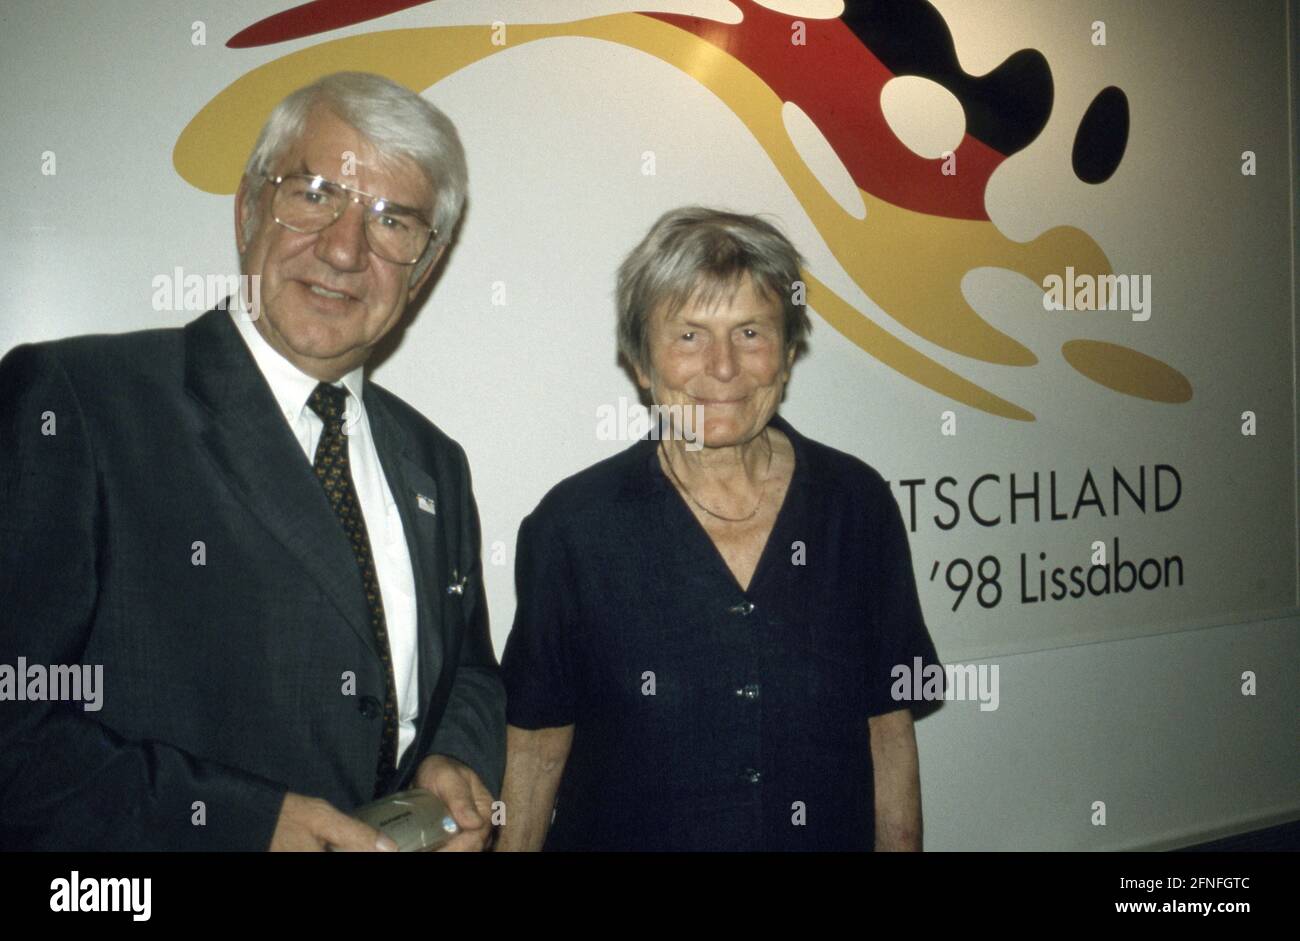 Elisabeth Mann Borgese (à droite) lors d'une visite à l'Expo de Lisbonne. [traduction automatique] Banque D'Images